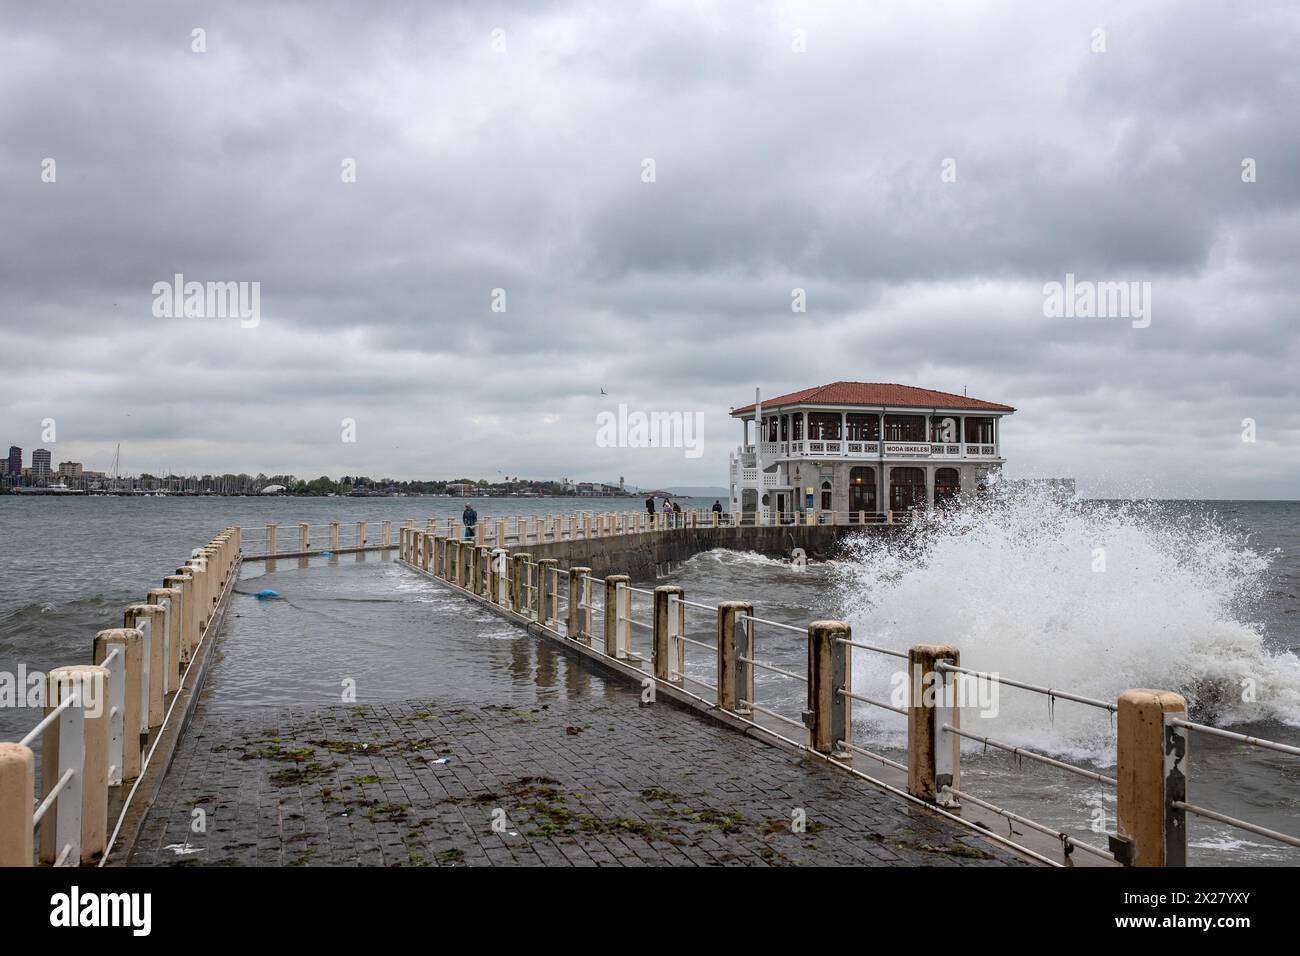 Des vagues ont vu monter et frapper la jetée de Moda, un service de ferry à Istanbul, Türkiye. Les gens ont connu des moments difficiles car les fortes pluies ont fait leurs ravages à Istanbul. Banque D'Images